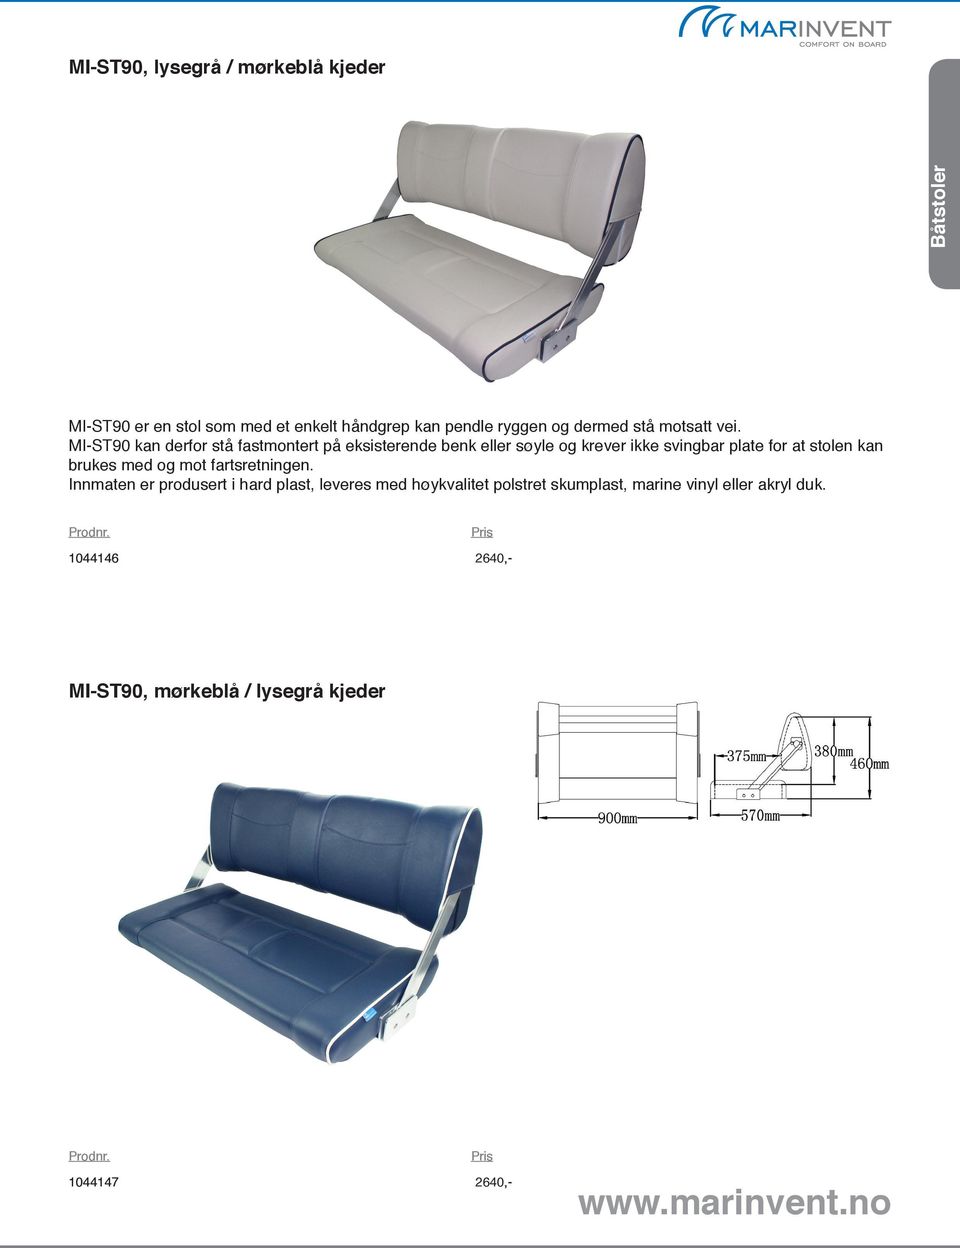 MI-ST90 kan derfor stå fastmontert på eksisterende benk eller søyle og krever ikke svingbar plate for at stolen kan